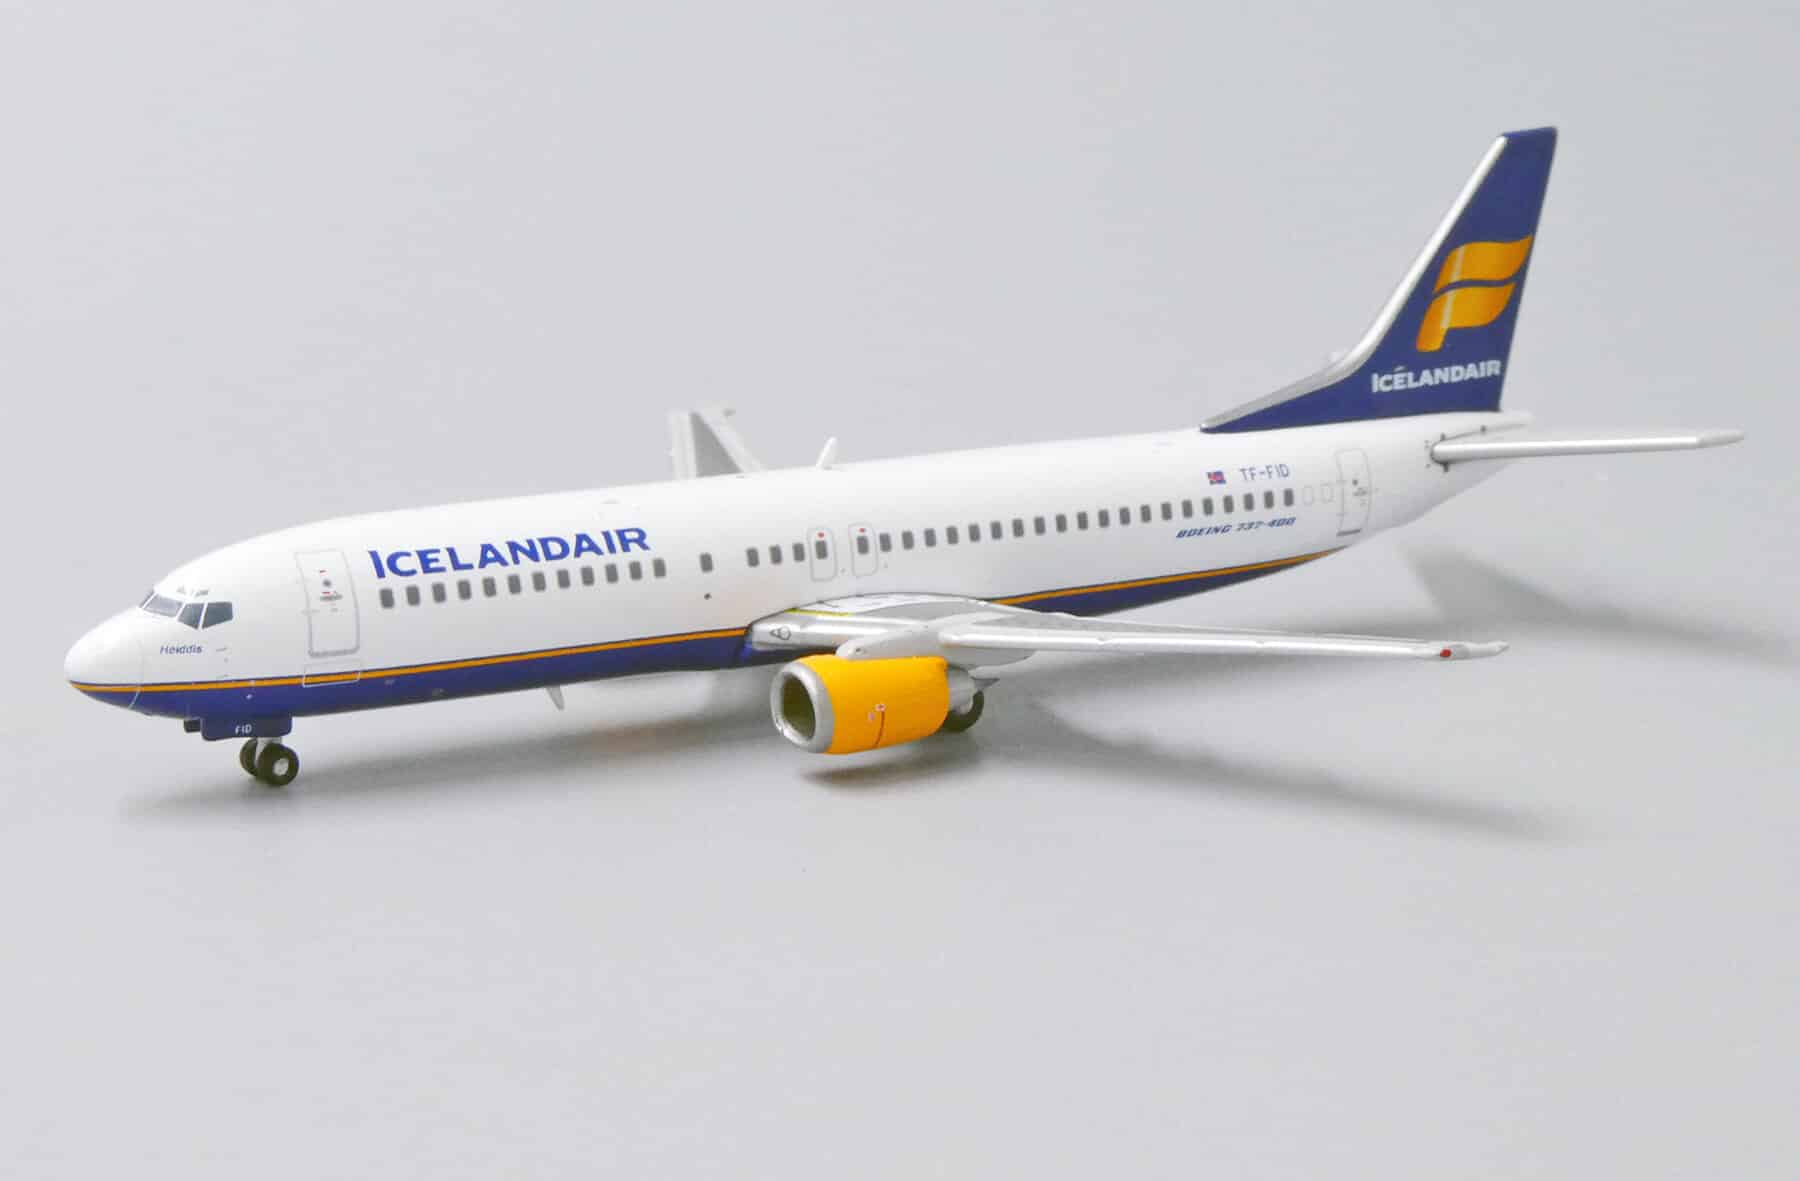 jc wings - 1:400 icelandair boeing 737-400 tf-fid (jc4238)